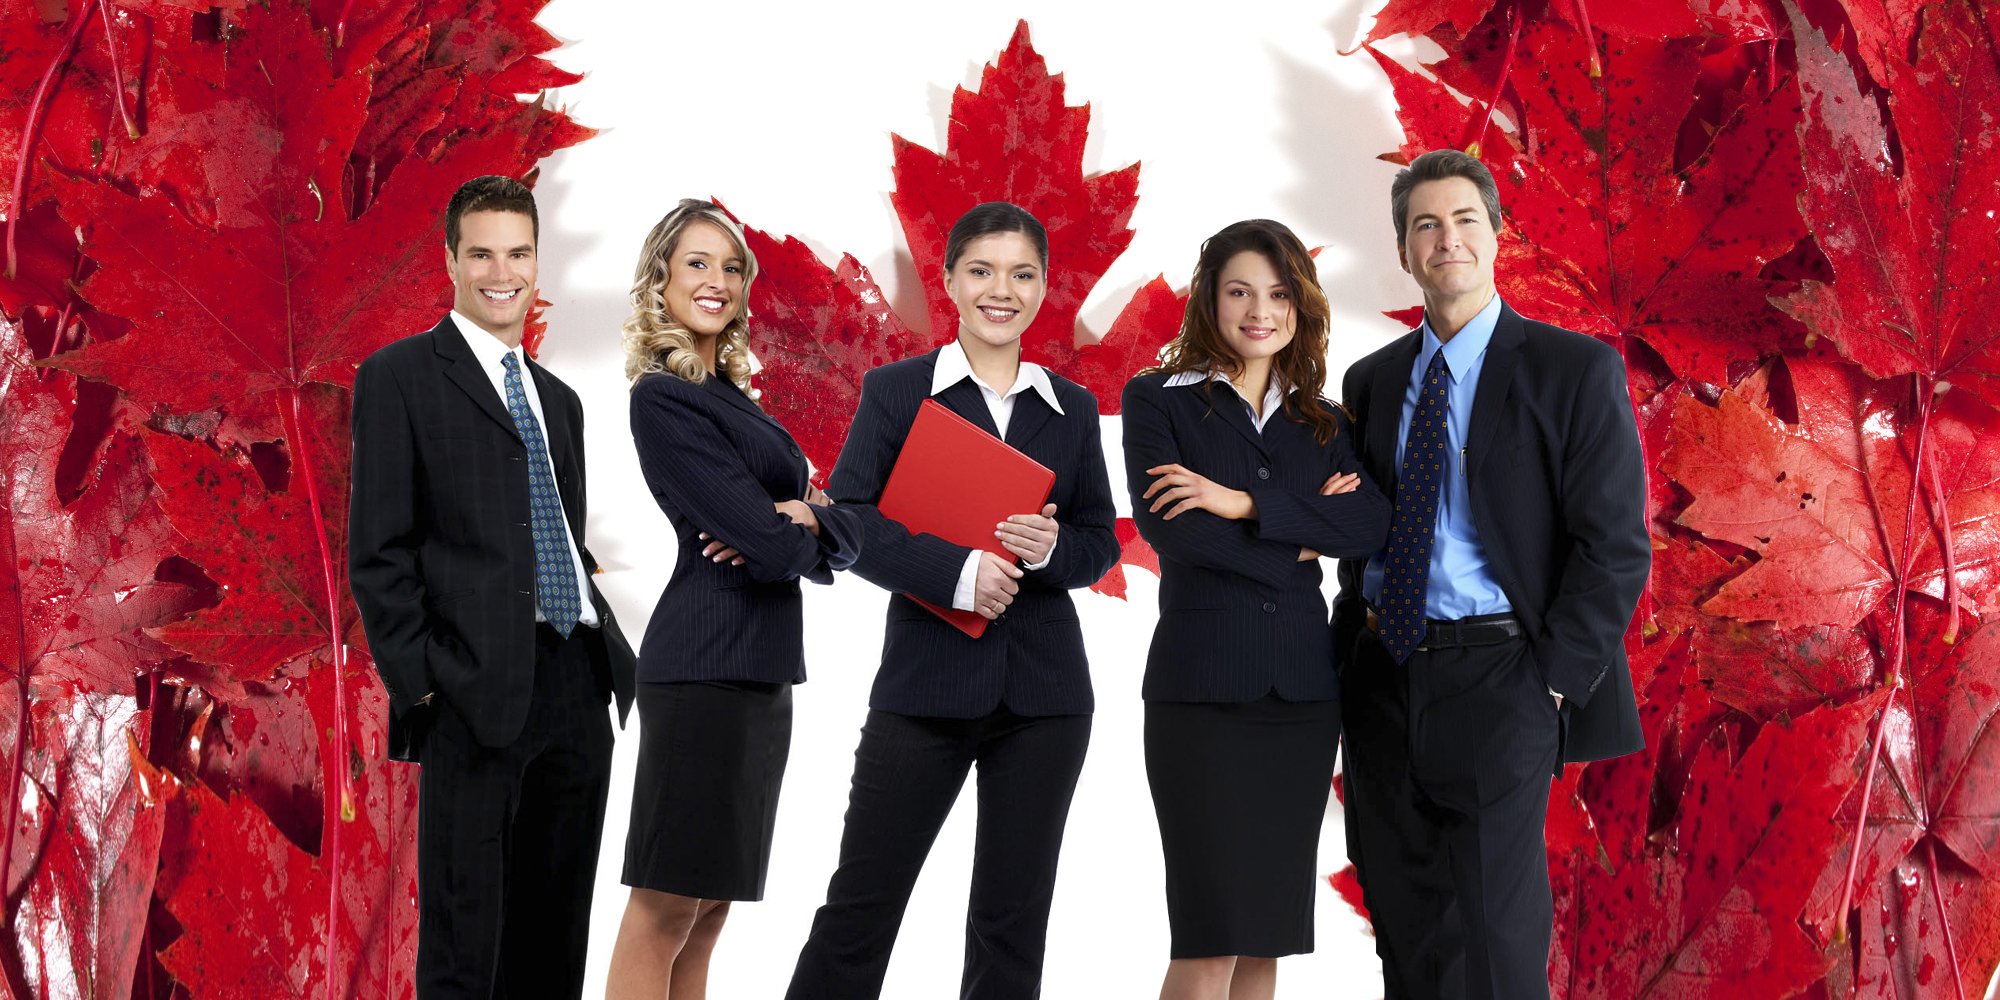 Иммиграция в канаду через бизнес 
иммиграция в канаду через бизнес - kiwi education - канада